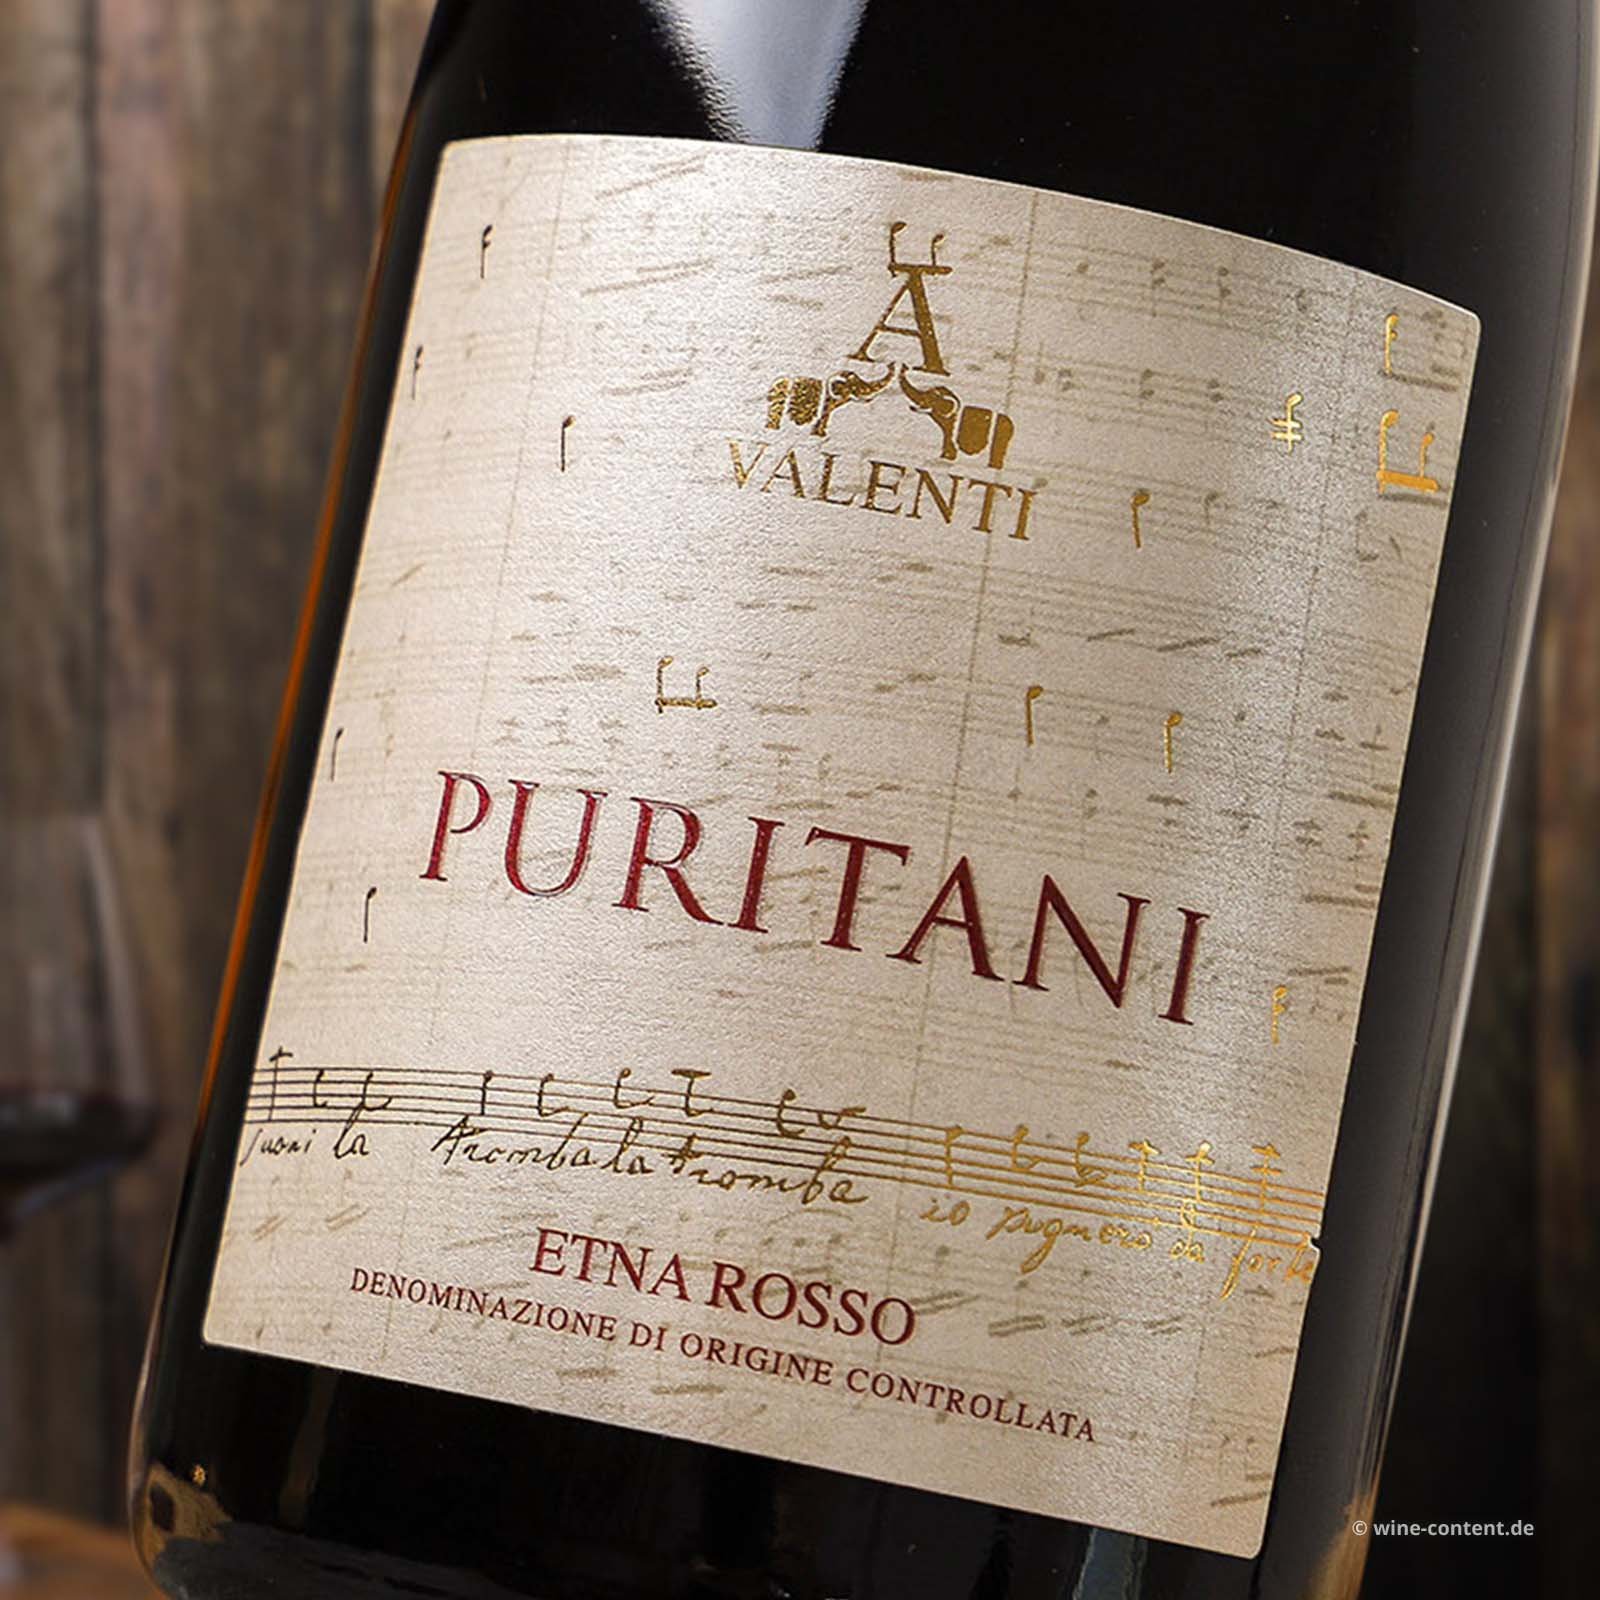 Etna Rosso 2016 Puritani